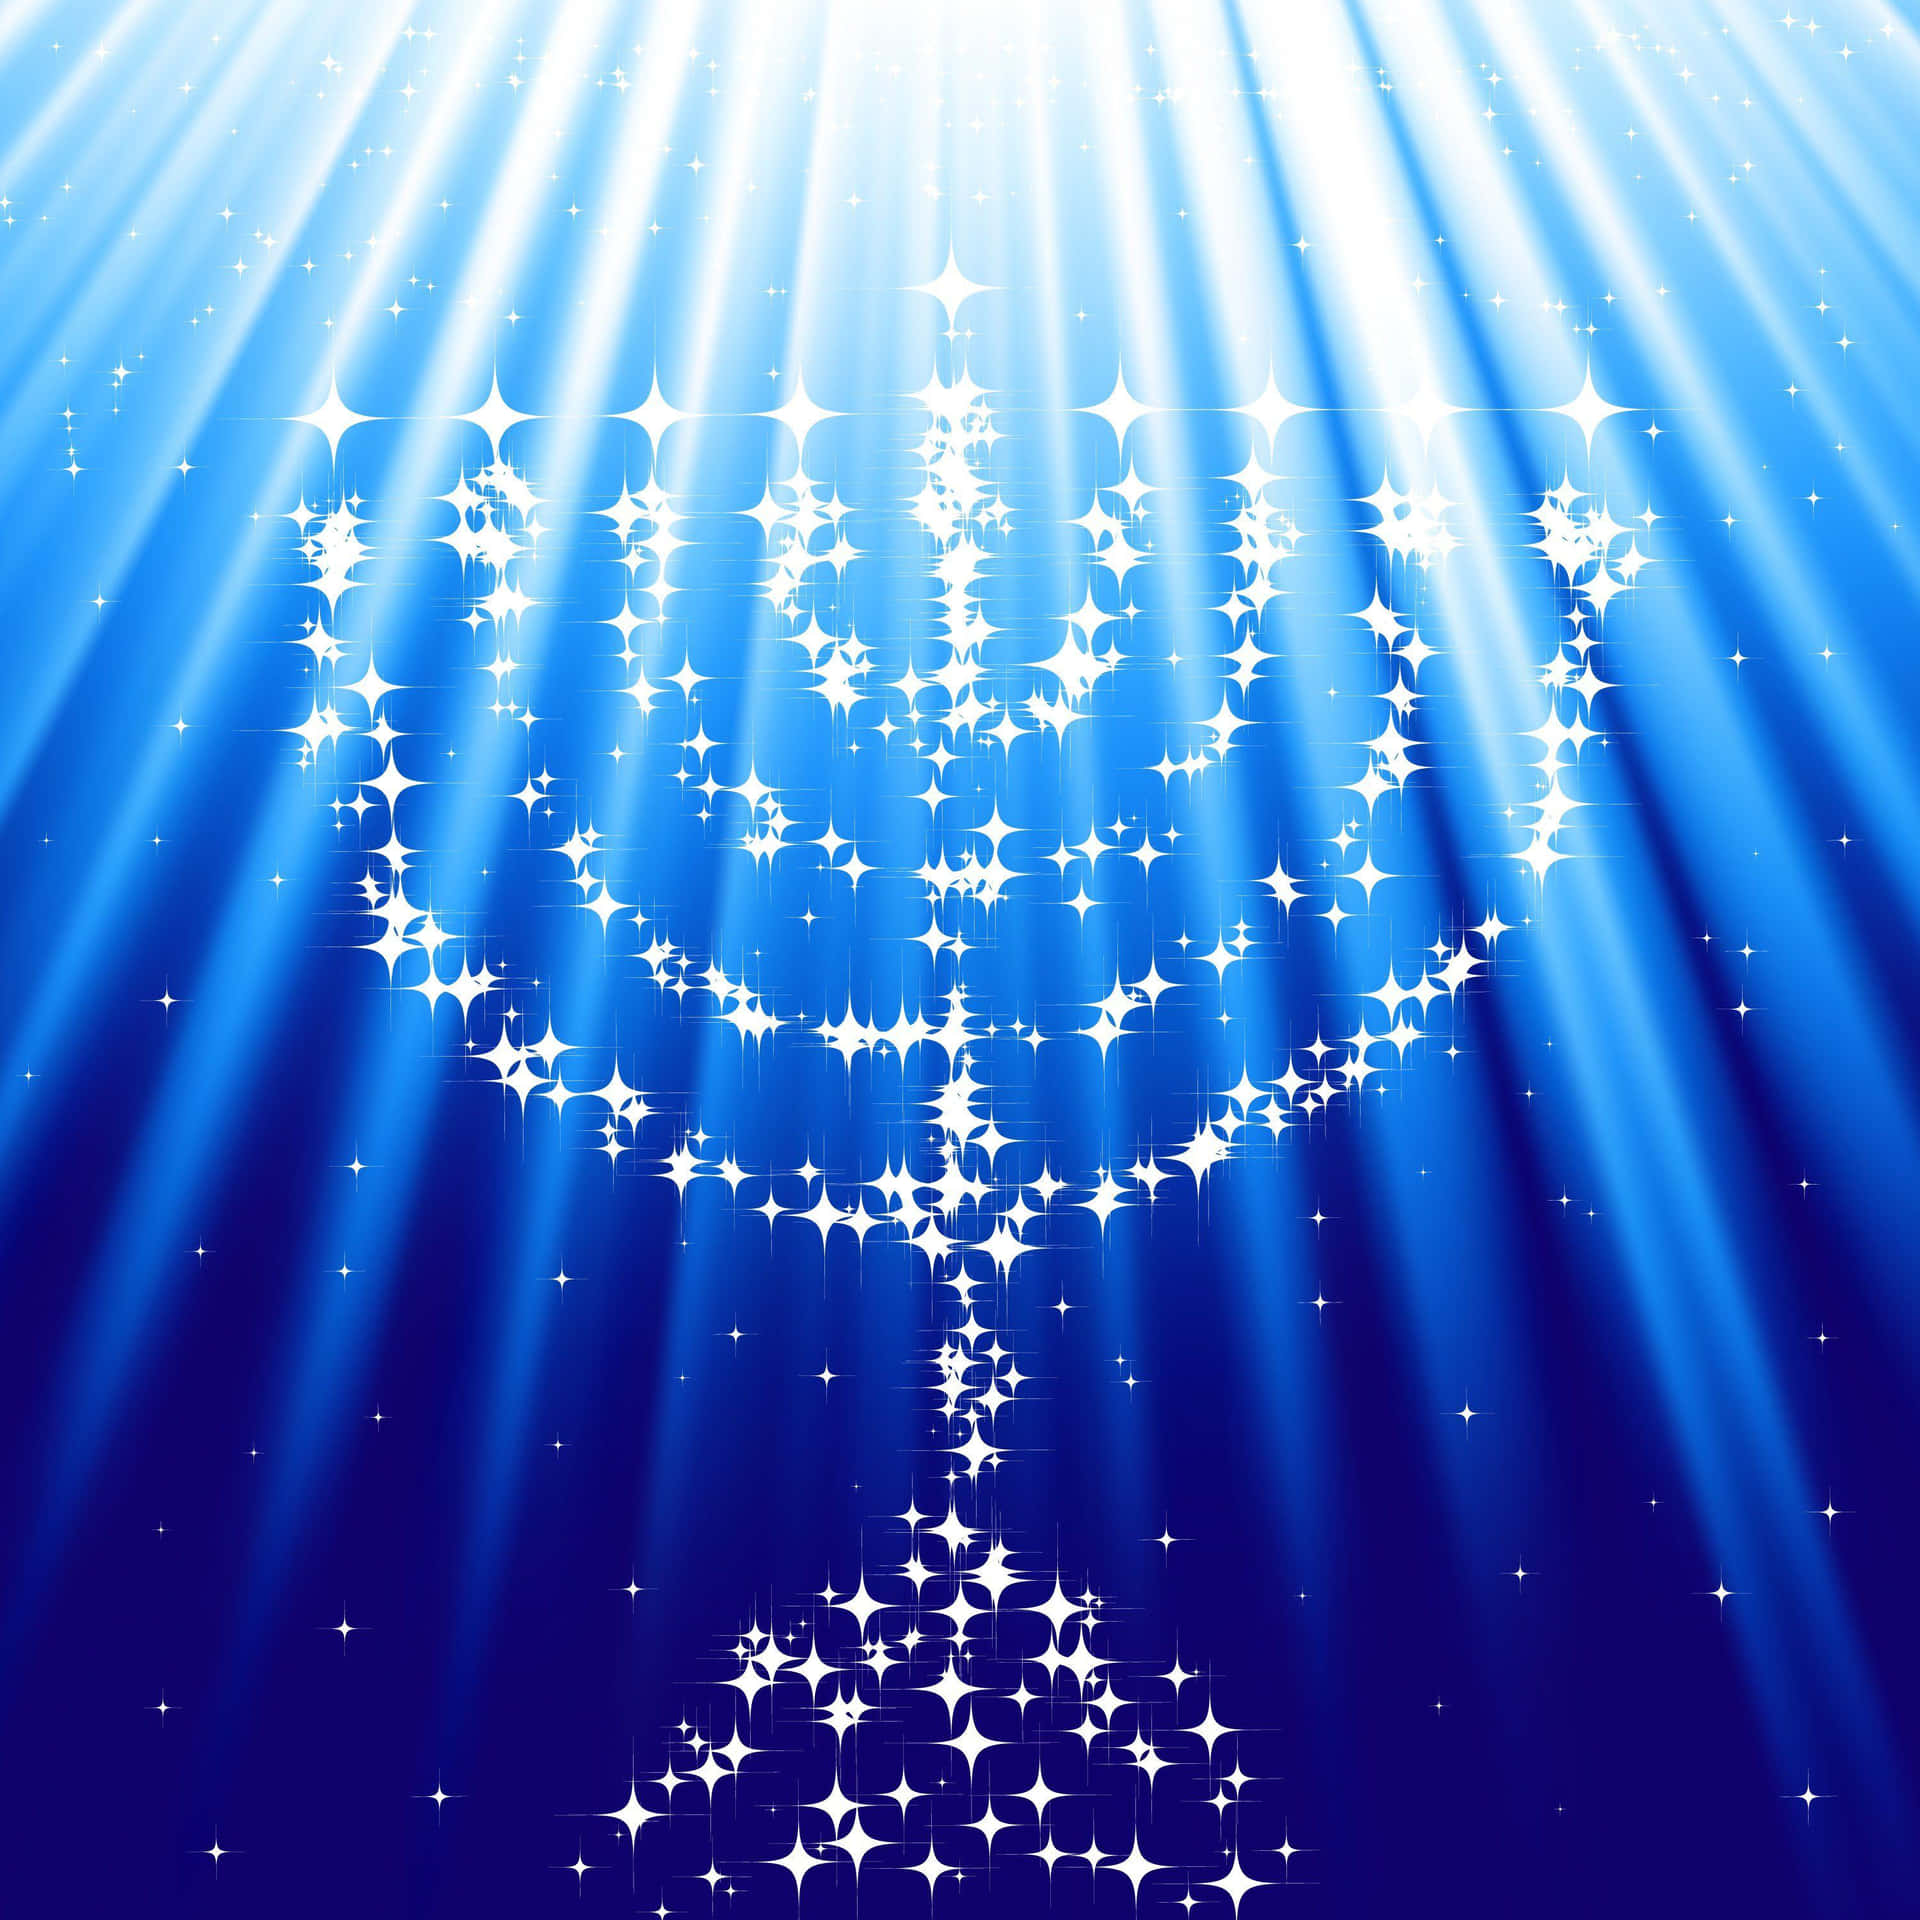 Oplysdit Hanukkah Fest Ved At Vælge En Lys Og Farverig Baggrund Til Din Computer Eller Mobilskærm!